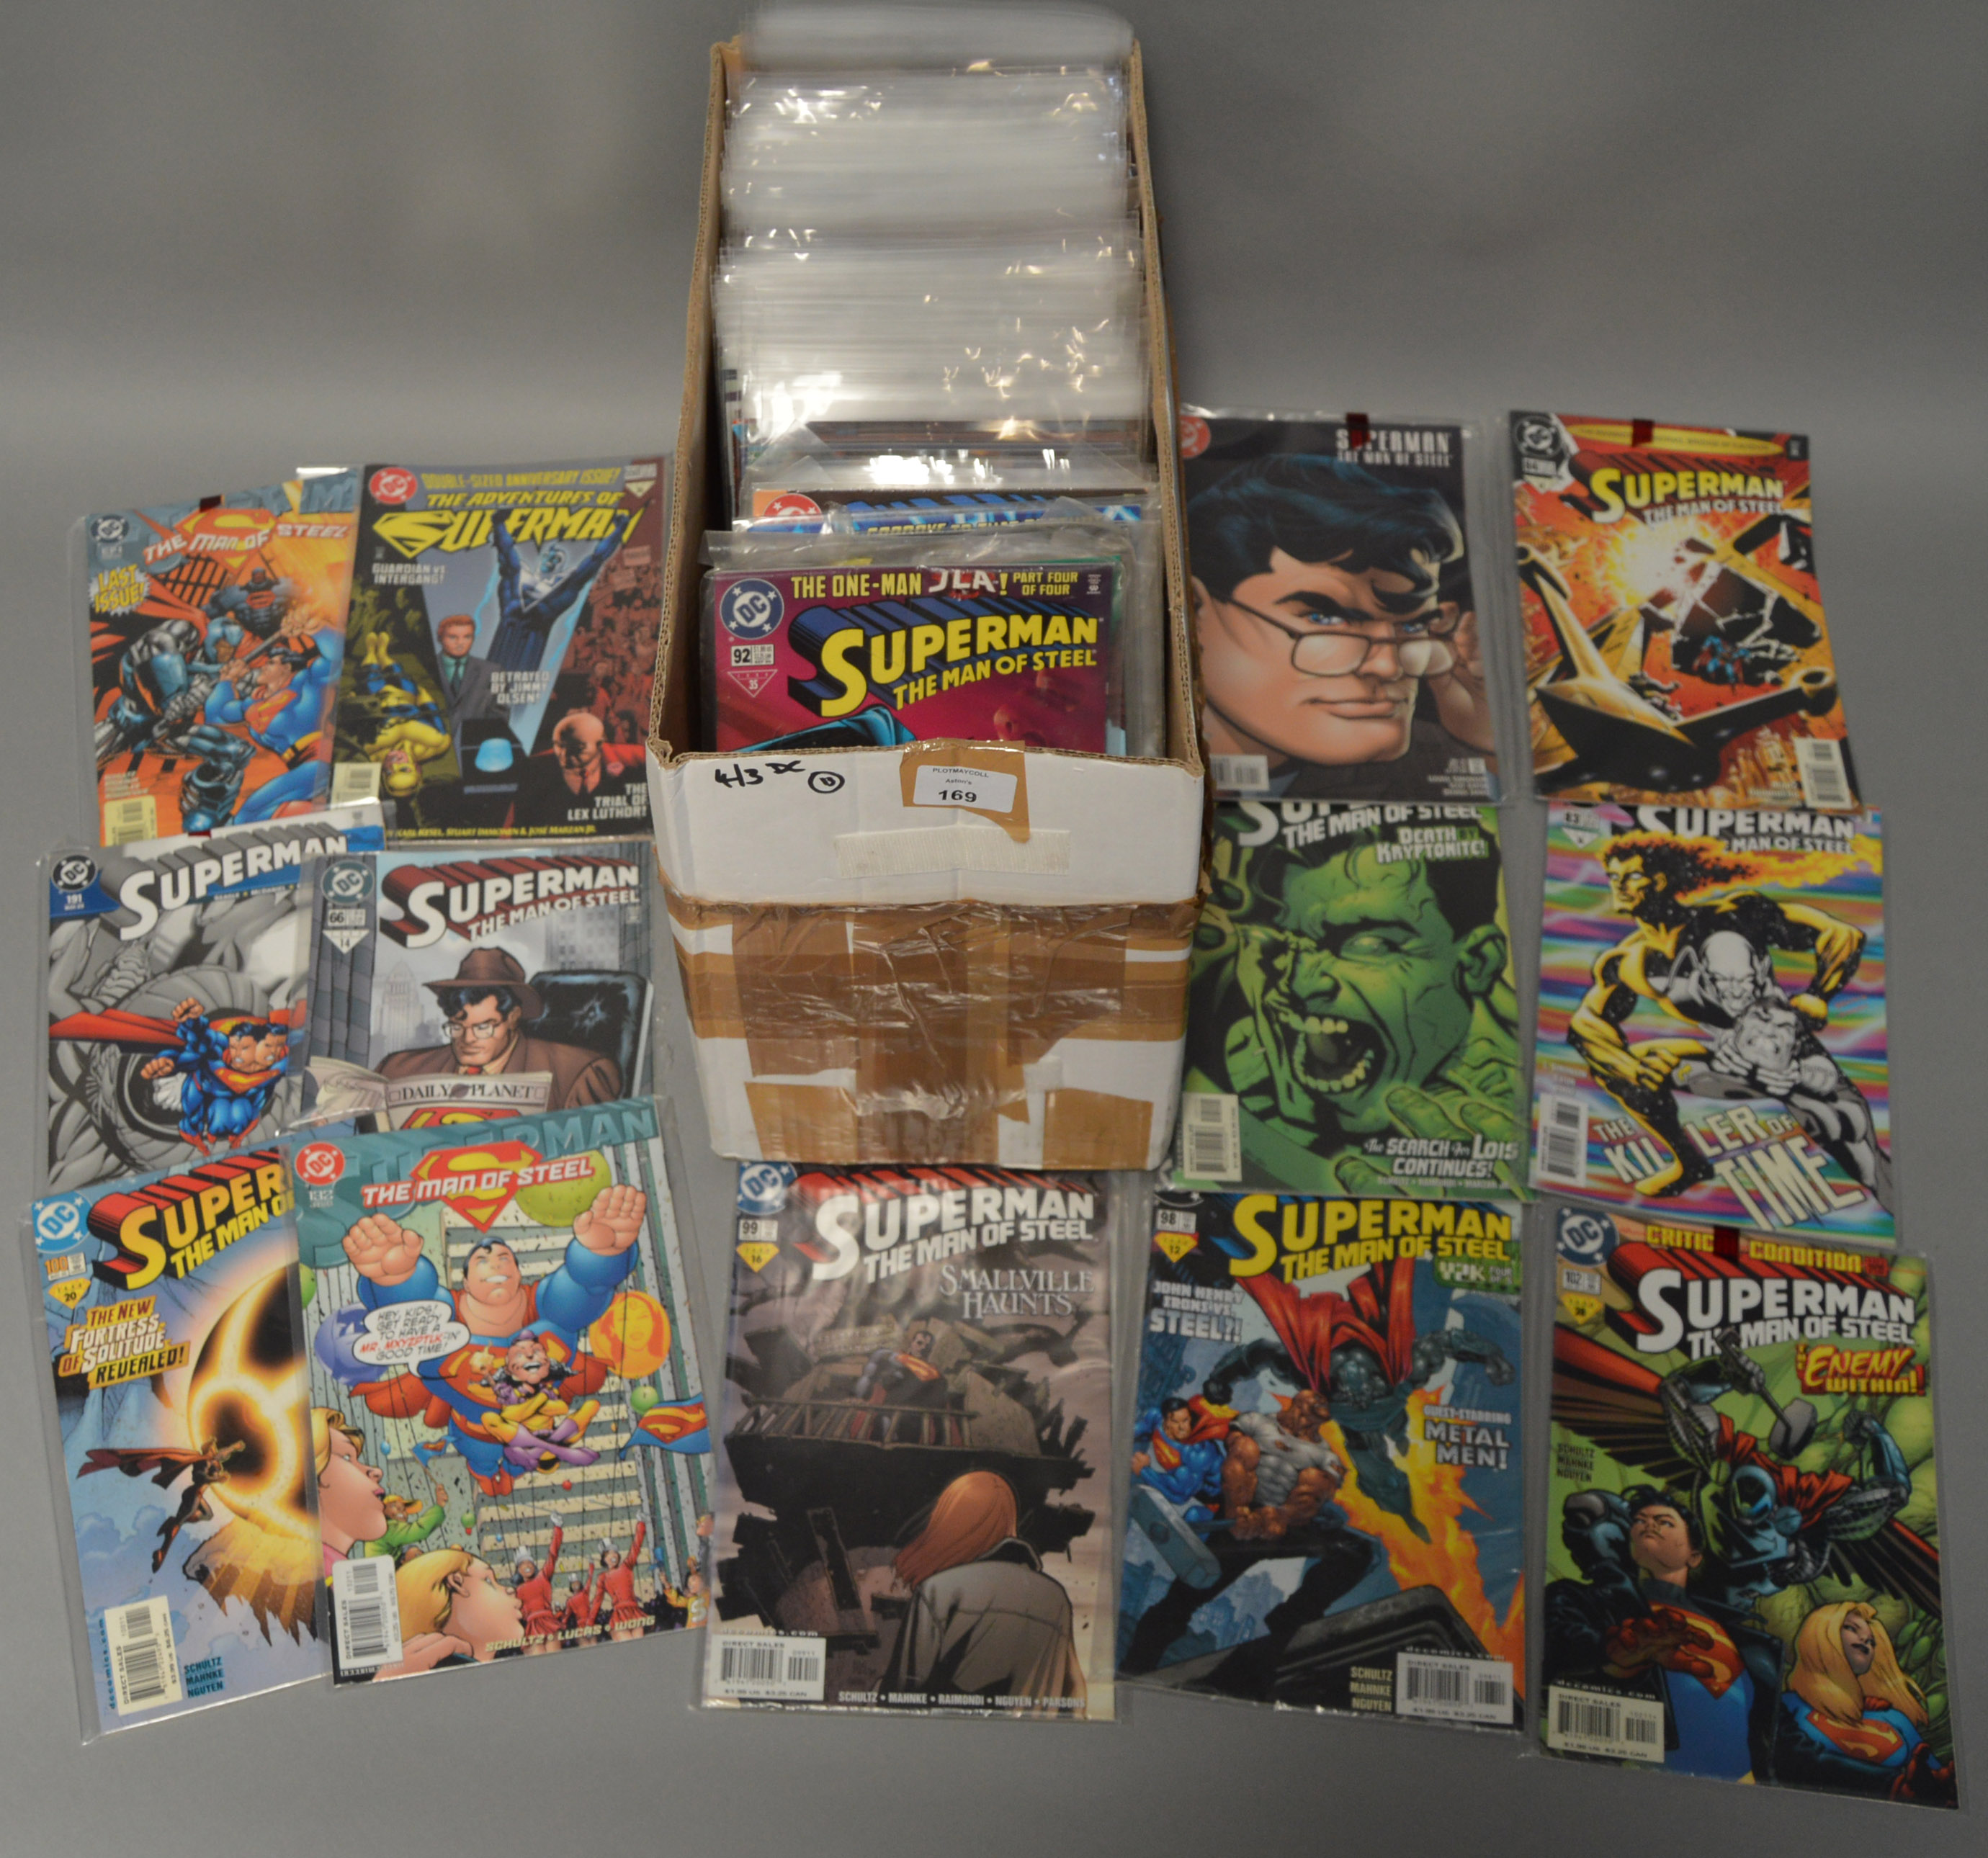 Approx 200 Superman comics including Action Comics, Adventures of Superman,